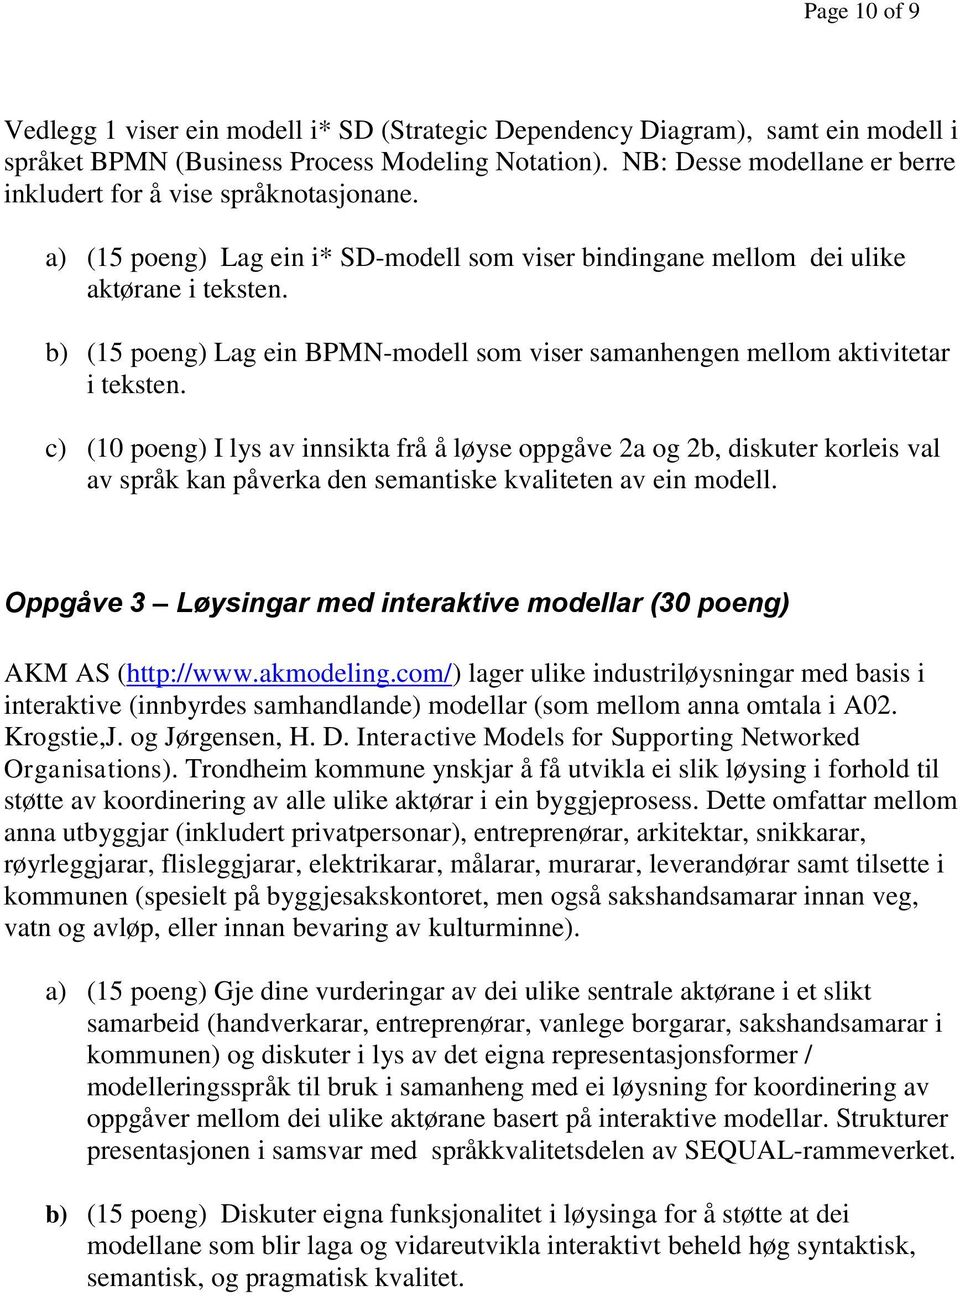 b) (15 poeng) Lag ein BPMN-modell som viser samanhengen mellom aktivitetar i teksten.